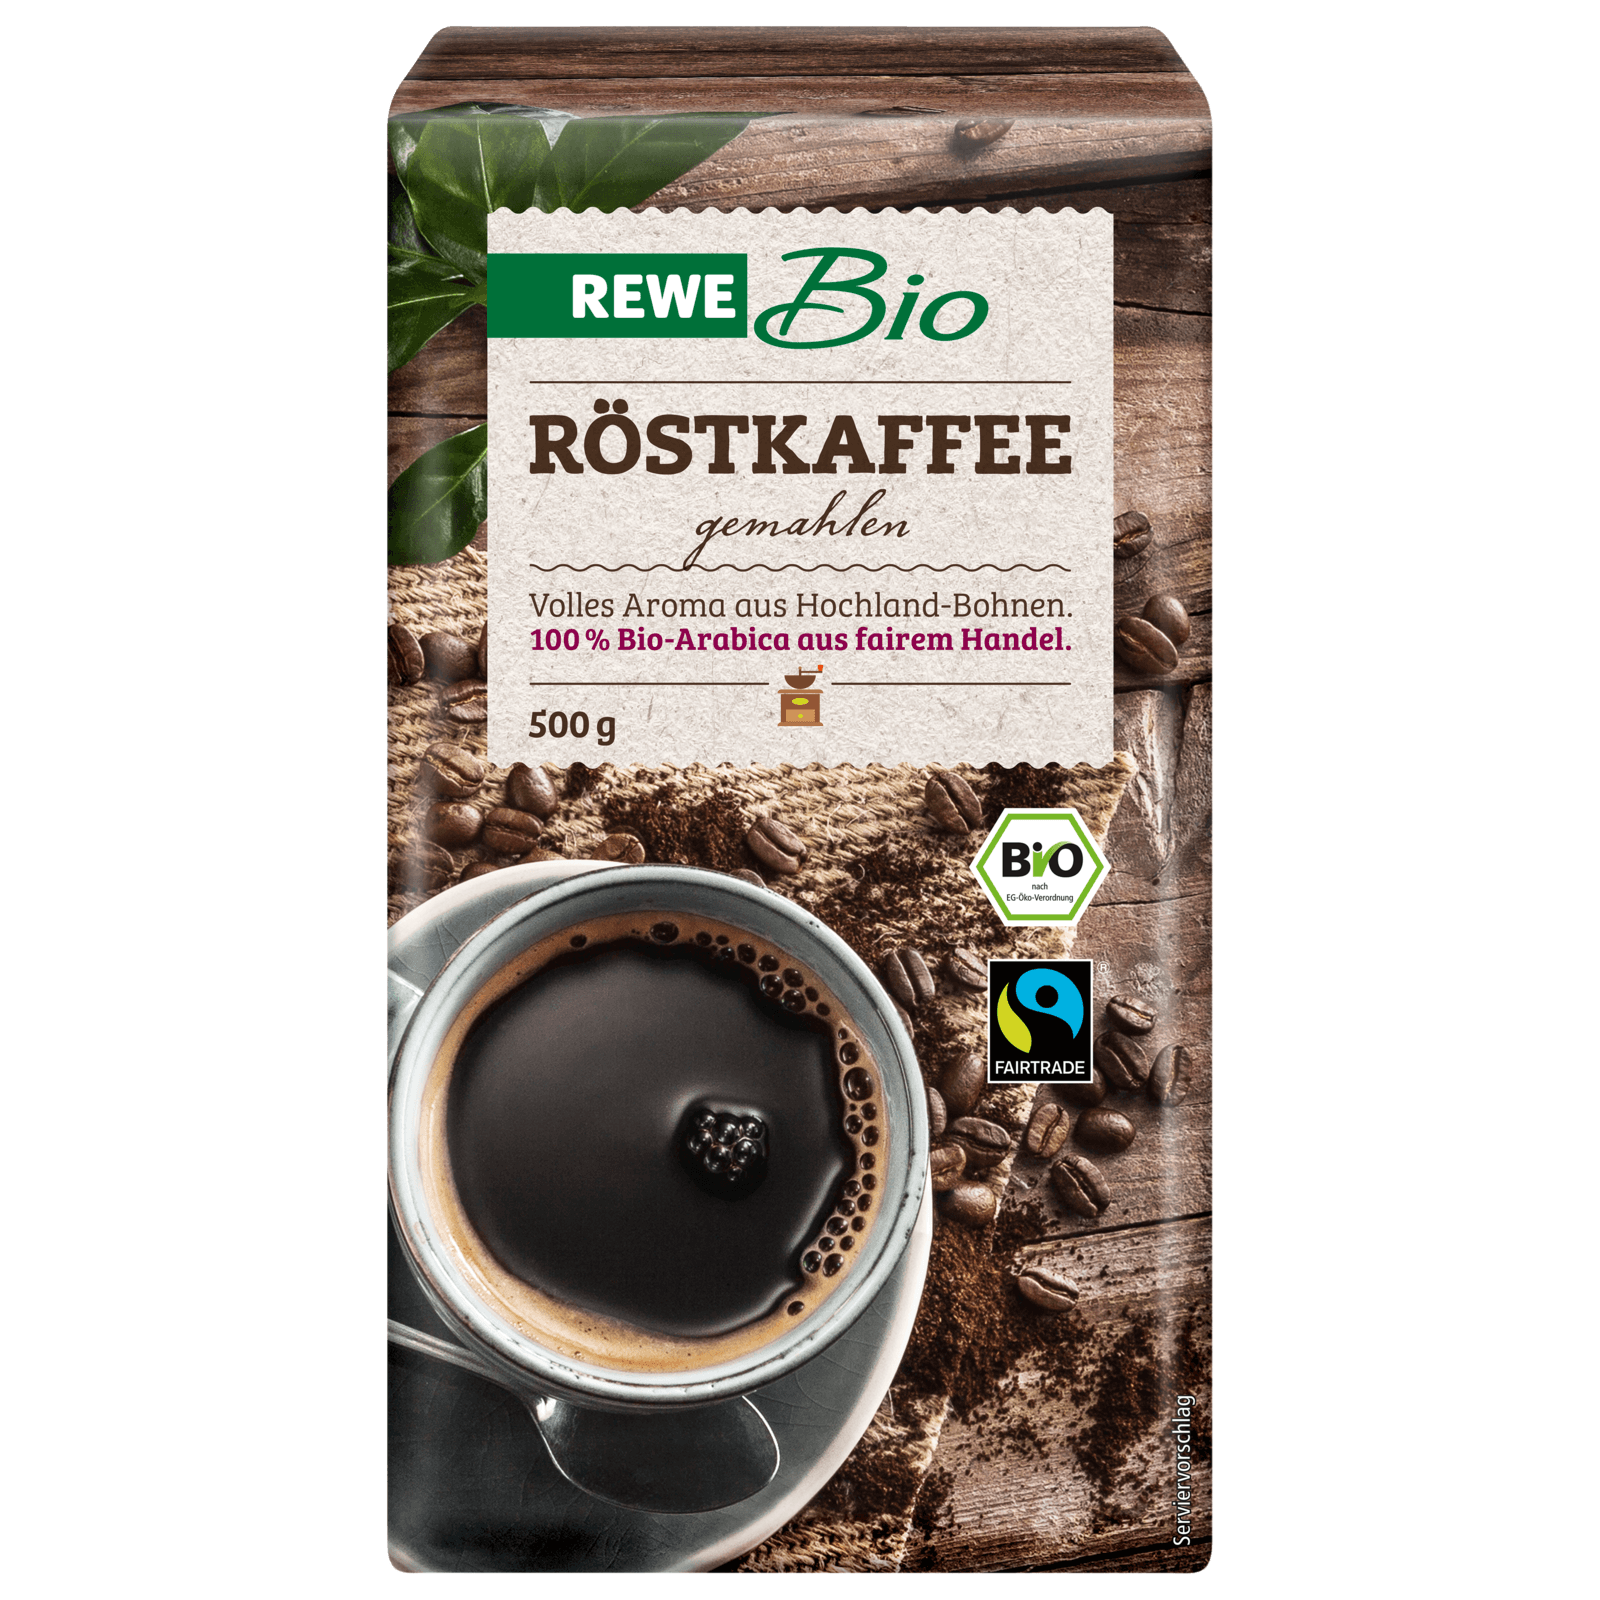 REWE Bio Röstkaffee gemahlen 500g